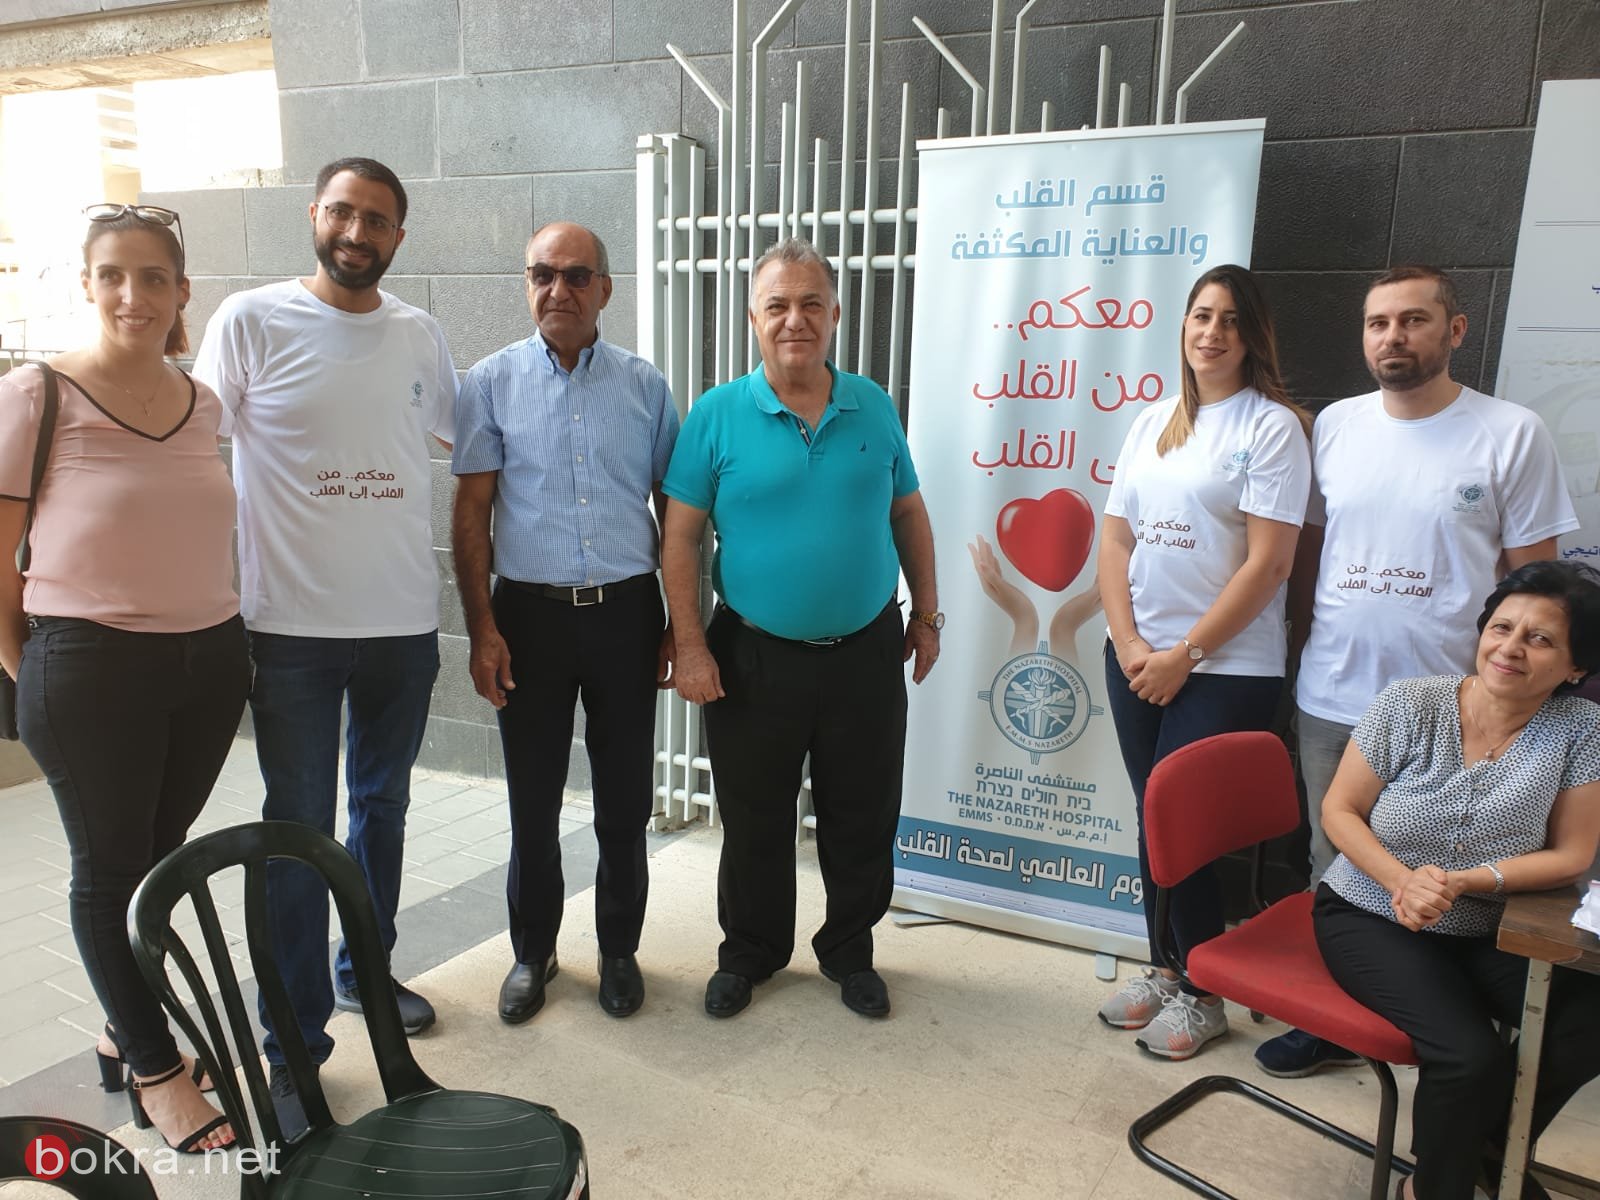  يوم صحة القلب في بلدية الناصرة-3